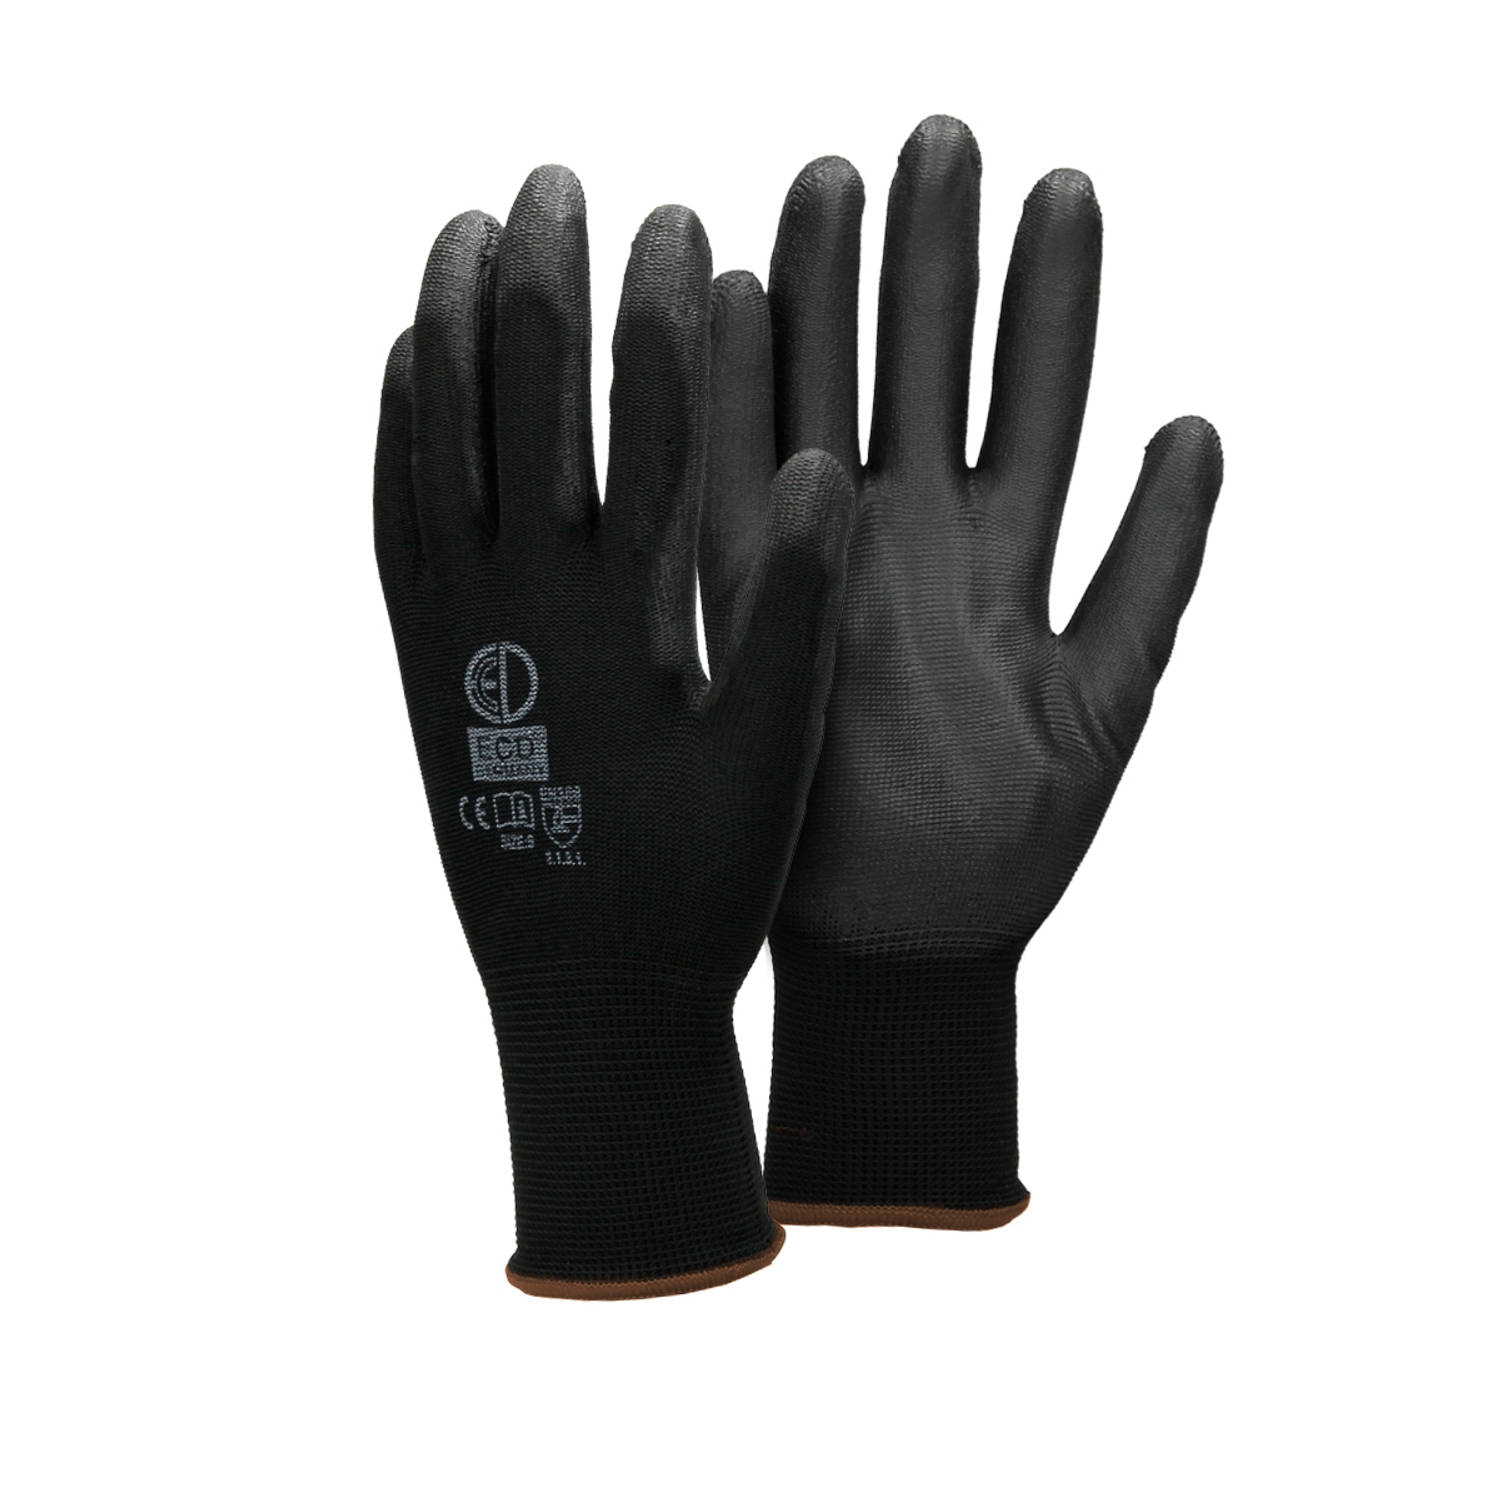 ECD Germany 4 paar werkhandschoenen met PU coating - maat 9-L - zwart - monteurshandschoenen montagehandschoenen beschermende handschoenen tuinhandschoenen - diverse kleuren & mate